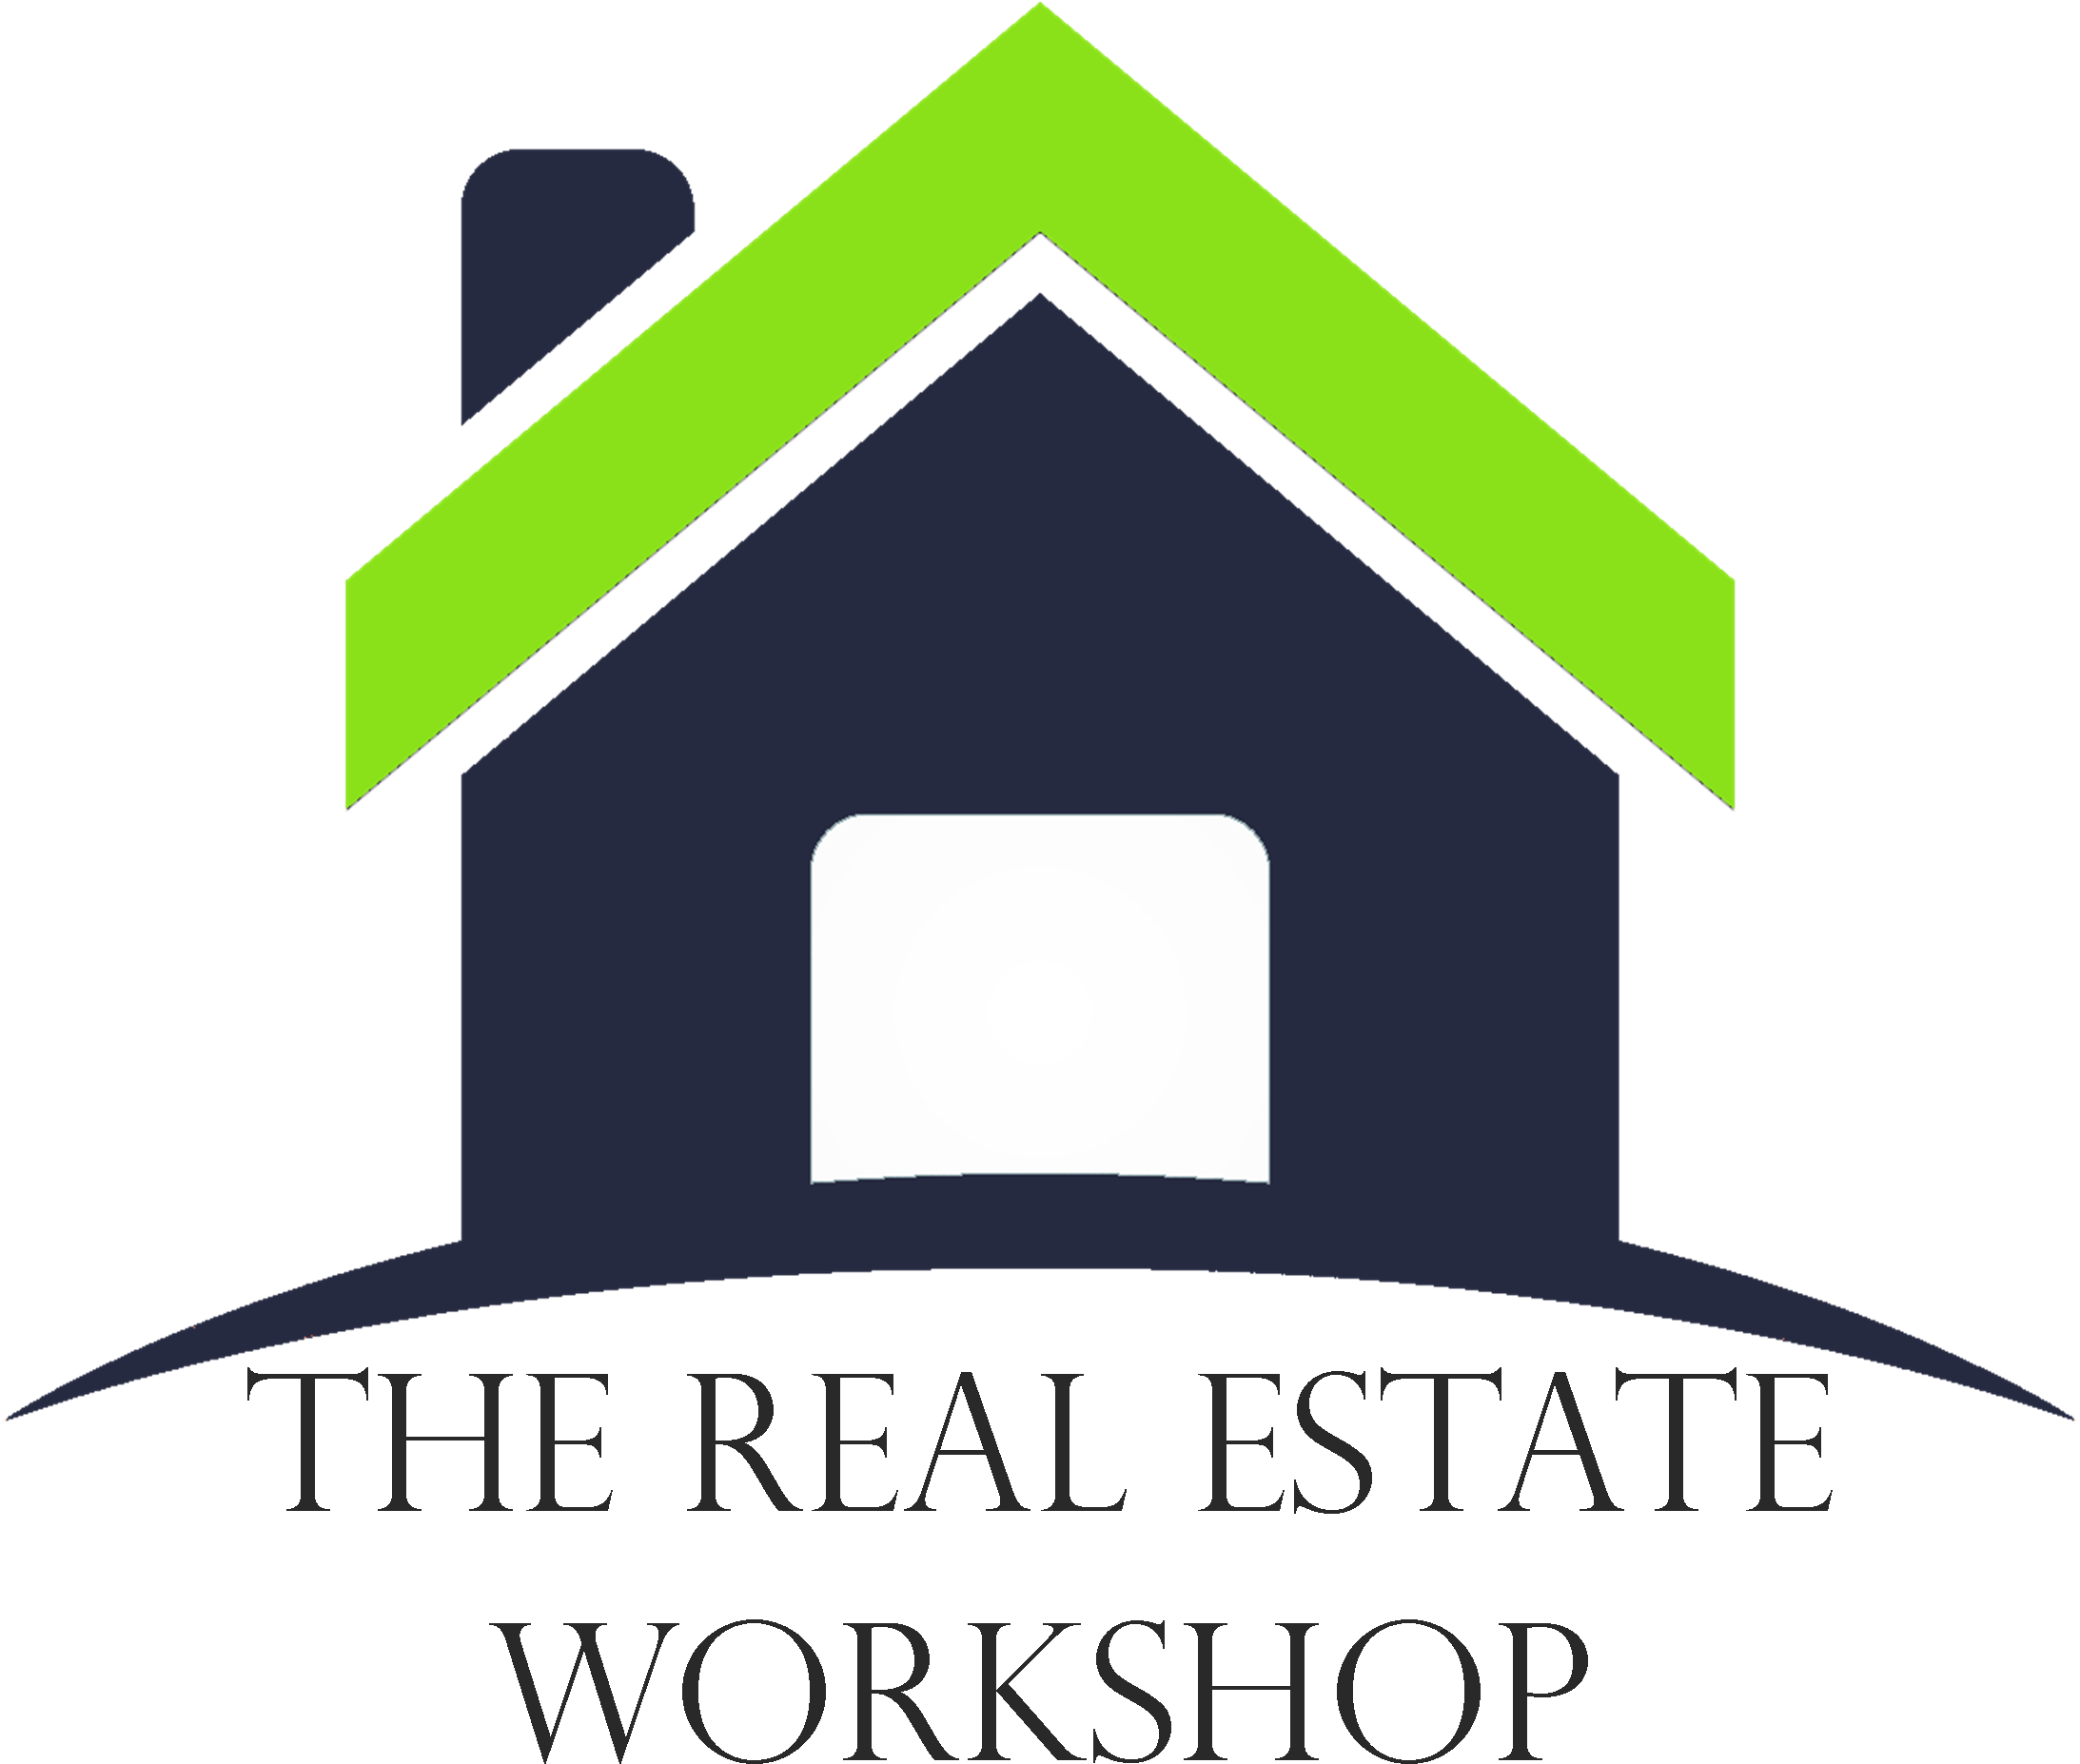 The Real Estate Workshop Llc - The Real Estate Workshop (2306x1988)